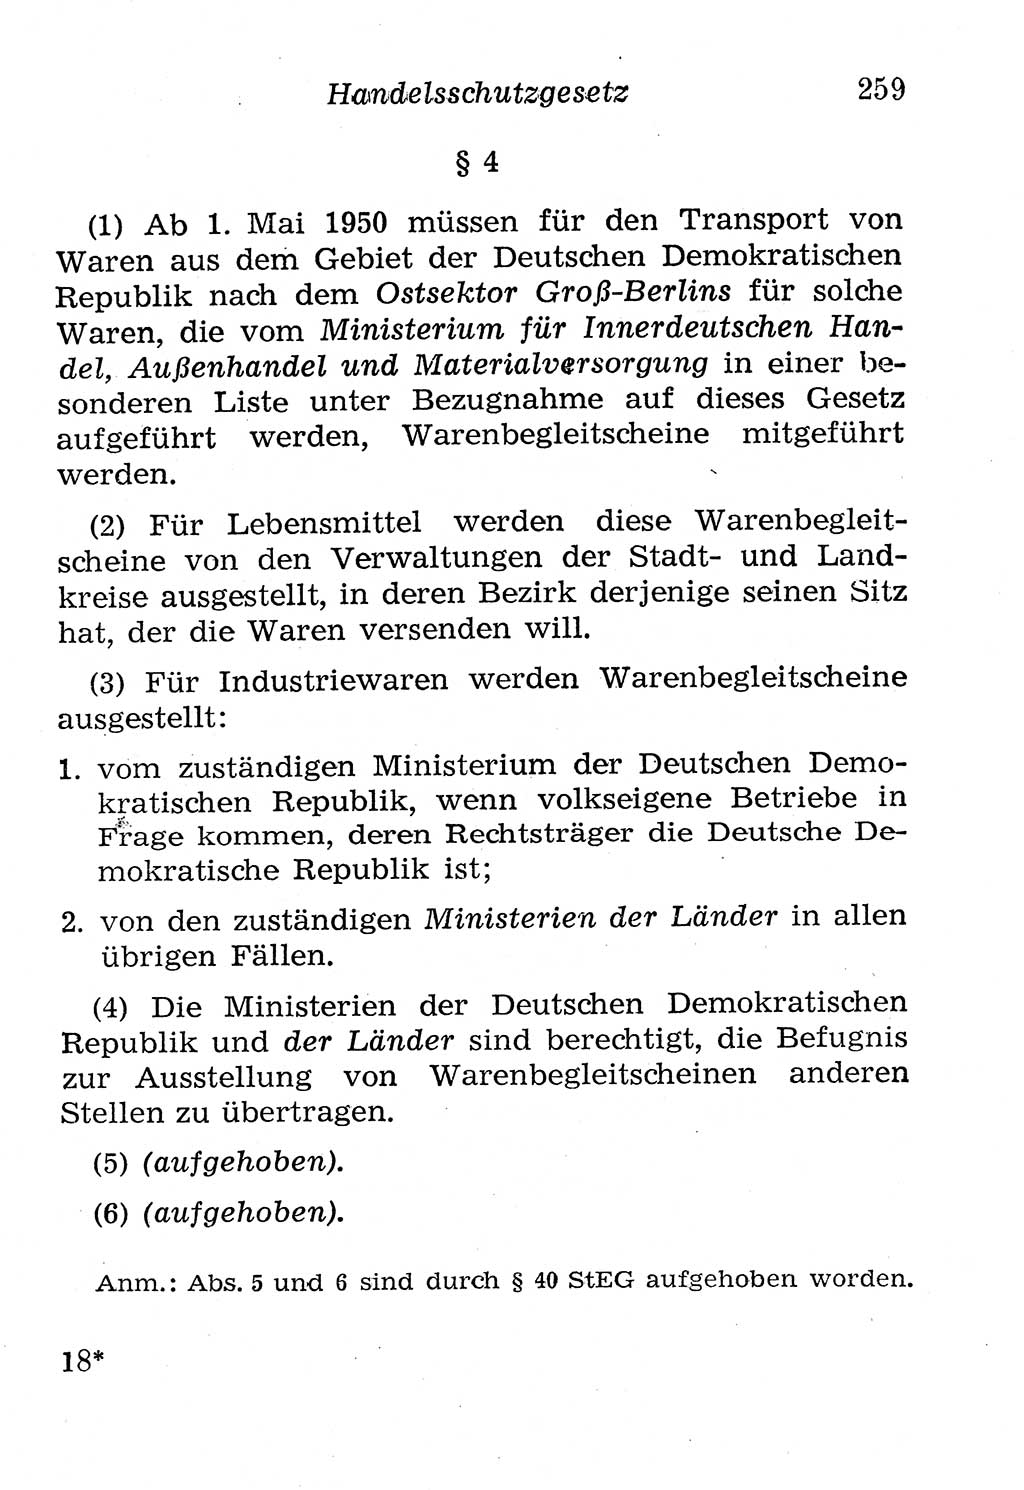 Strafgesetzbuch (StGB) und andere Strafgesetze [Deutsche Demokratische Republik (DDR)] 1958, Seite 259 (StGB Strafges. DDR 1958, S. 259)